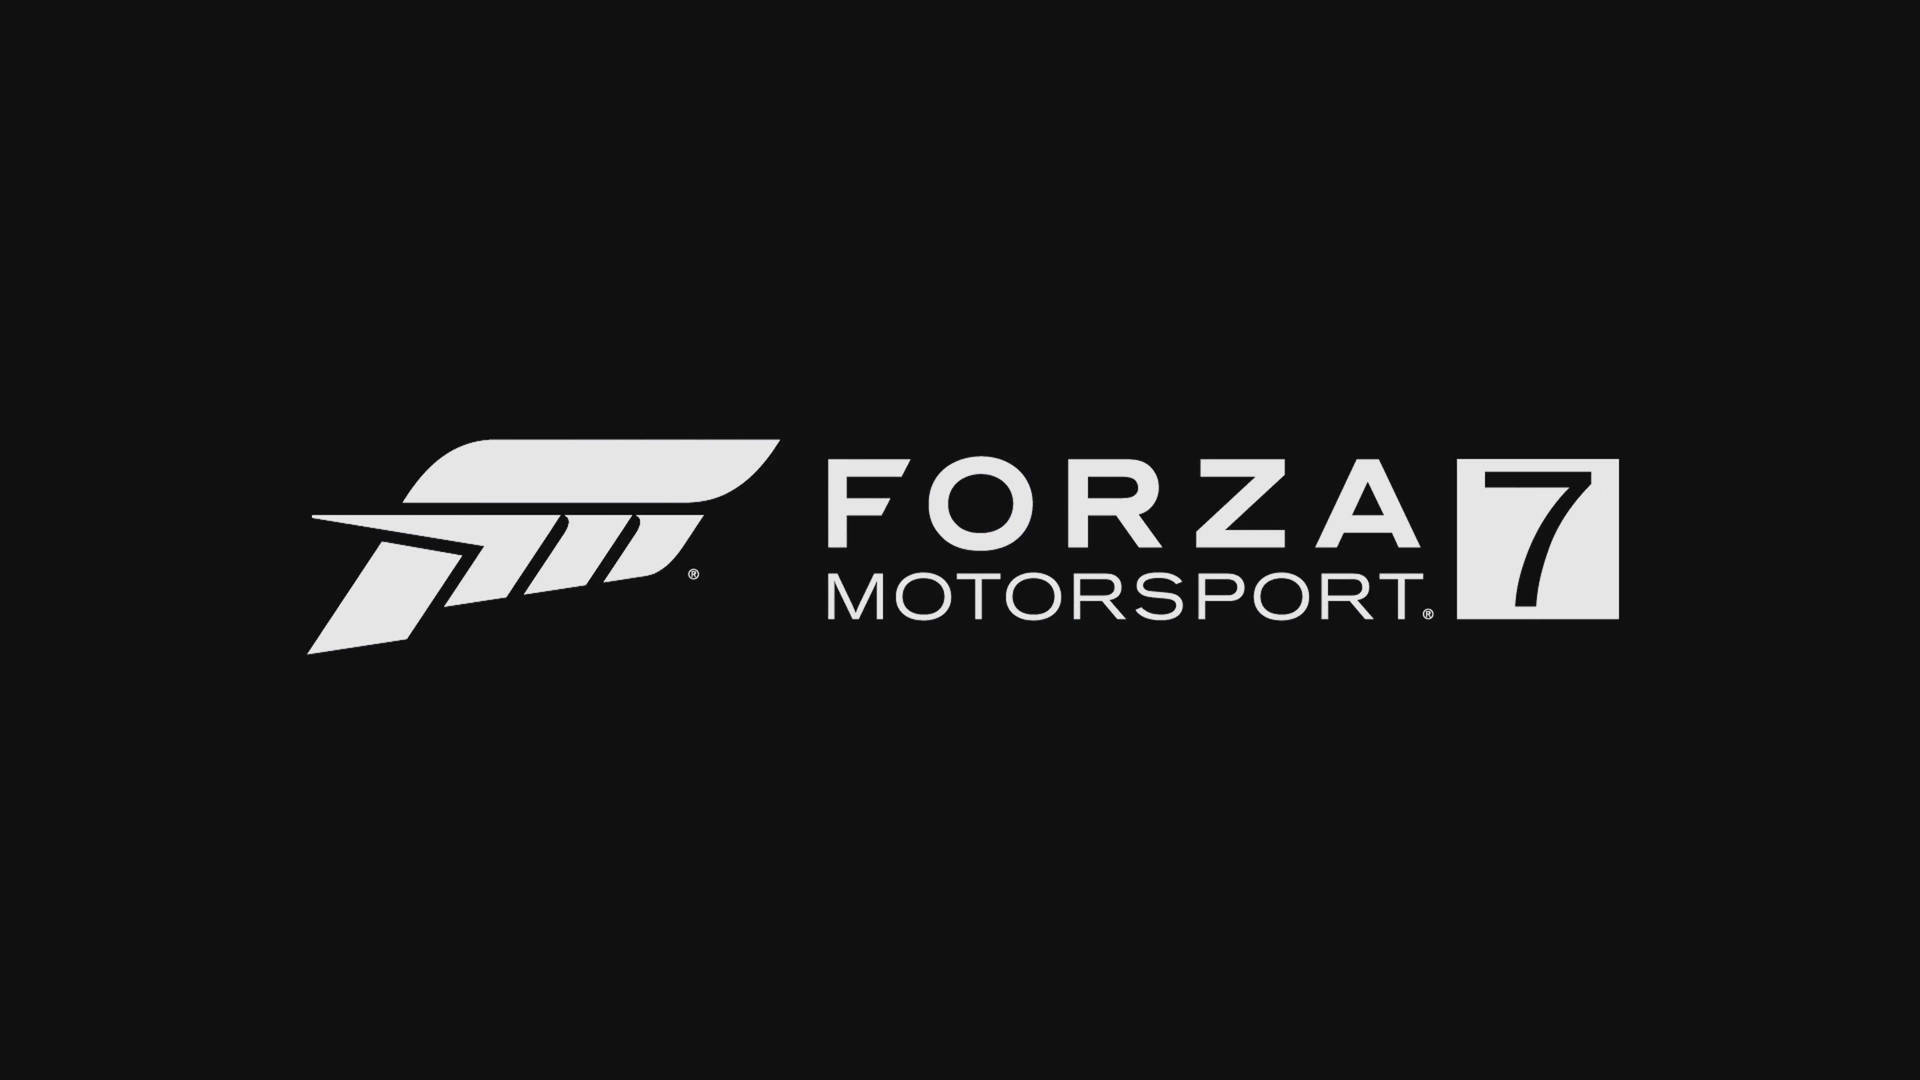 Forza 7 Motorsport Logo Wallpaper